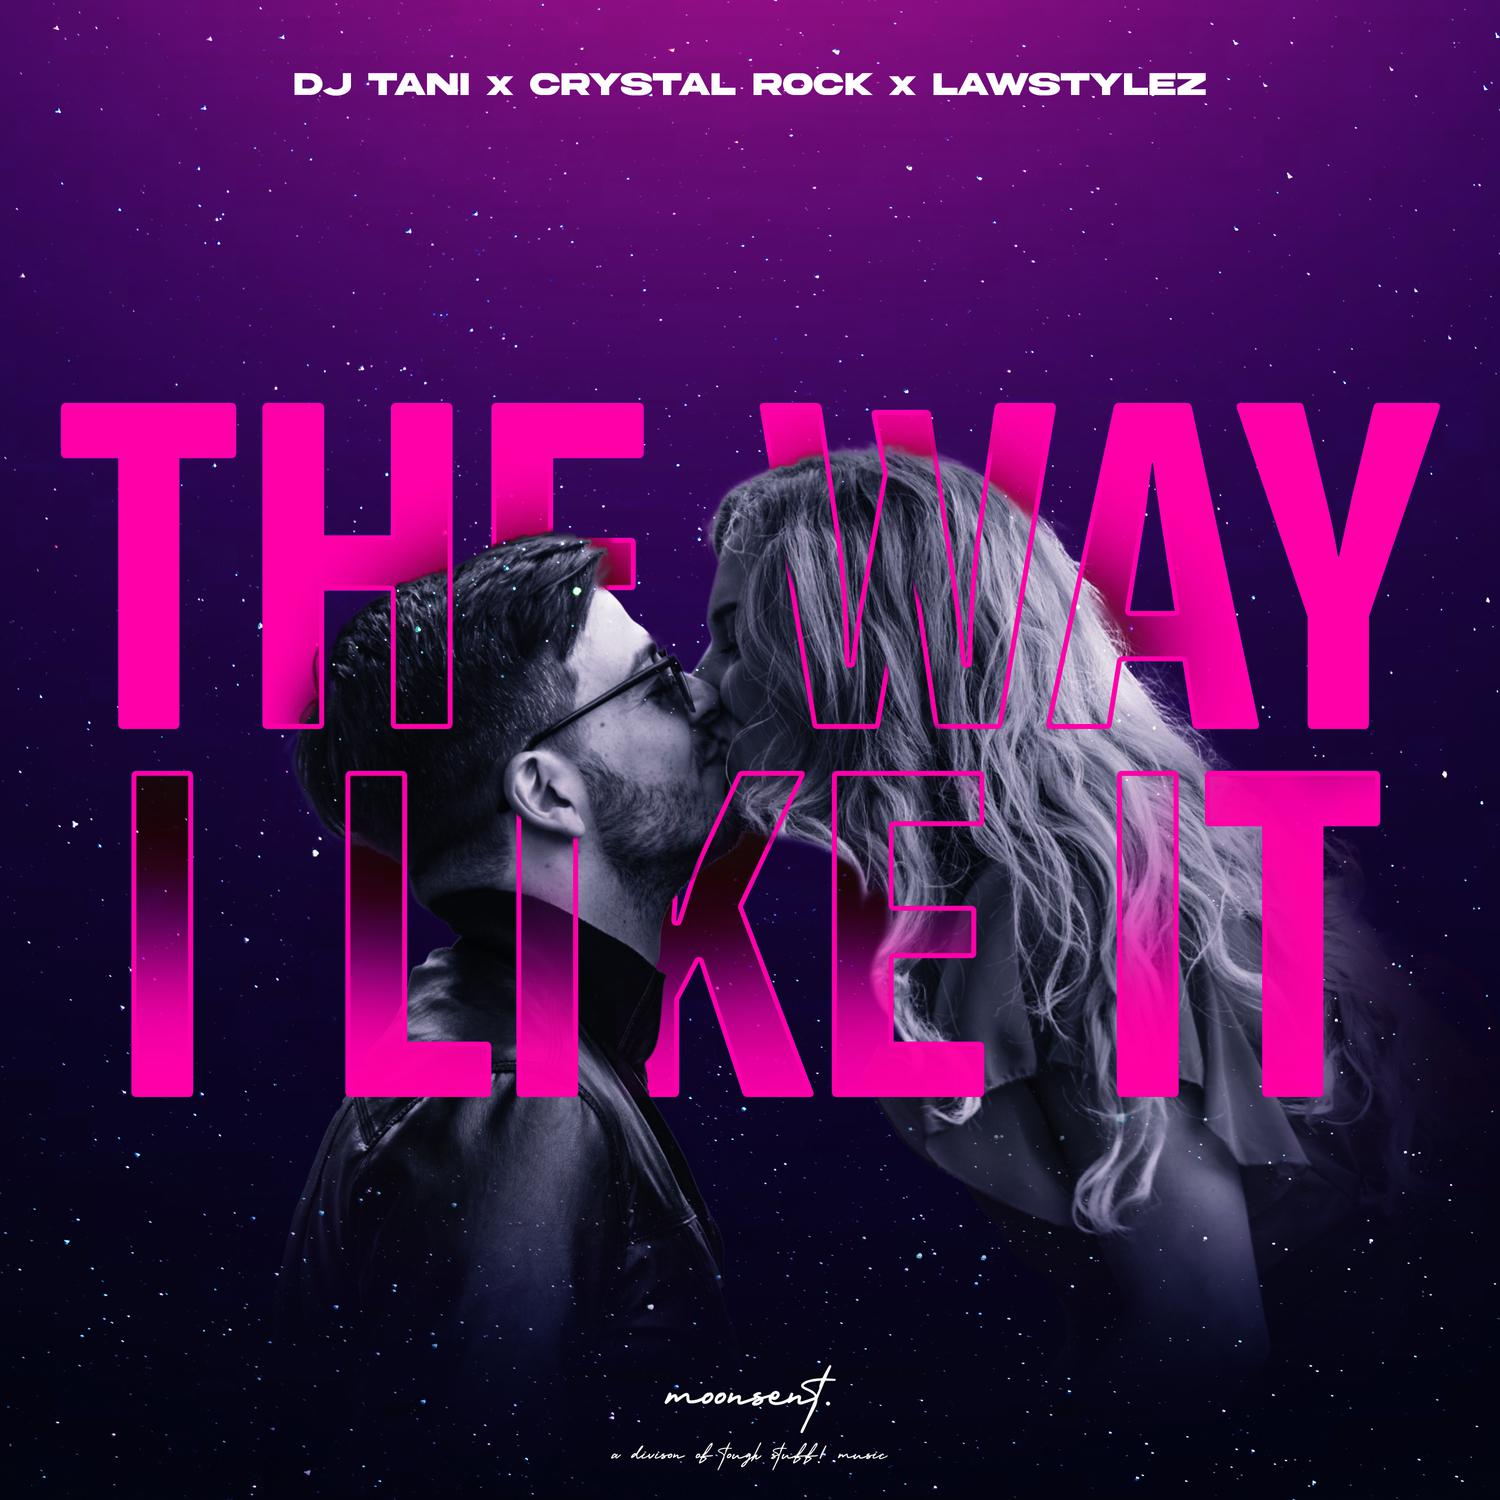 DJ Tani - The Way I Like It